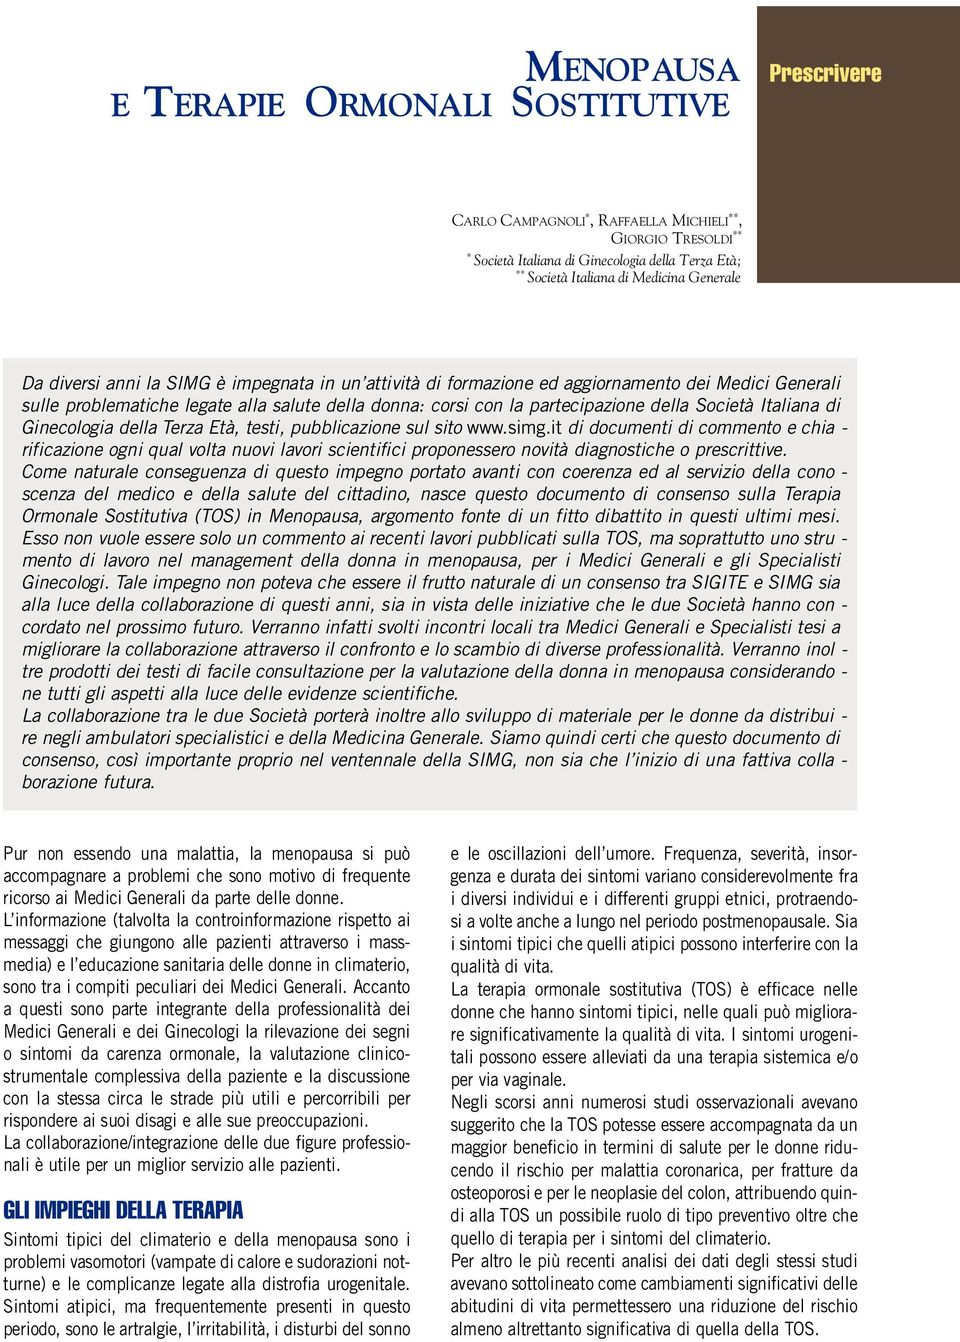 della Società Italiana di Ginecologia della Te rza Età, testi, pubblicazione sul sito w w w.simg.